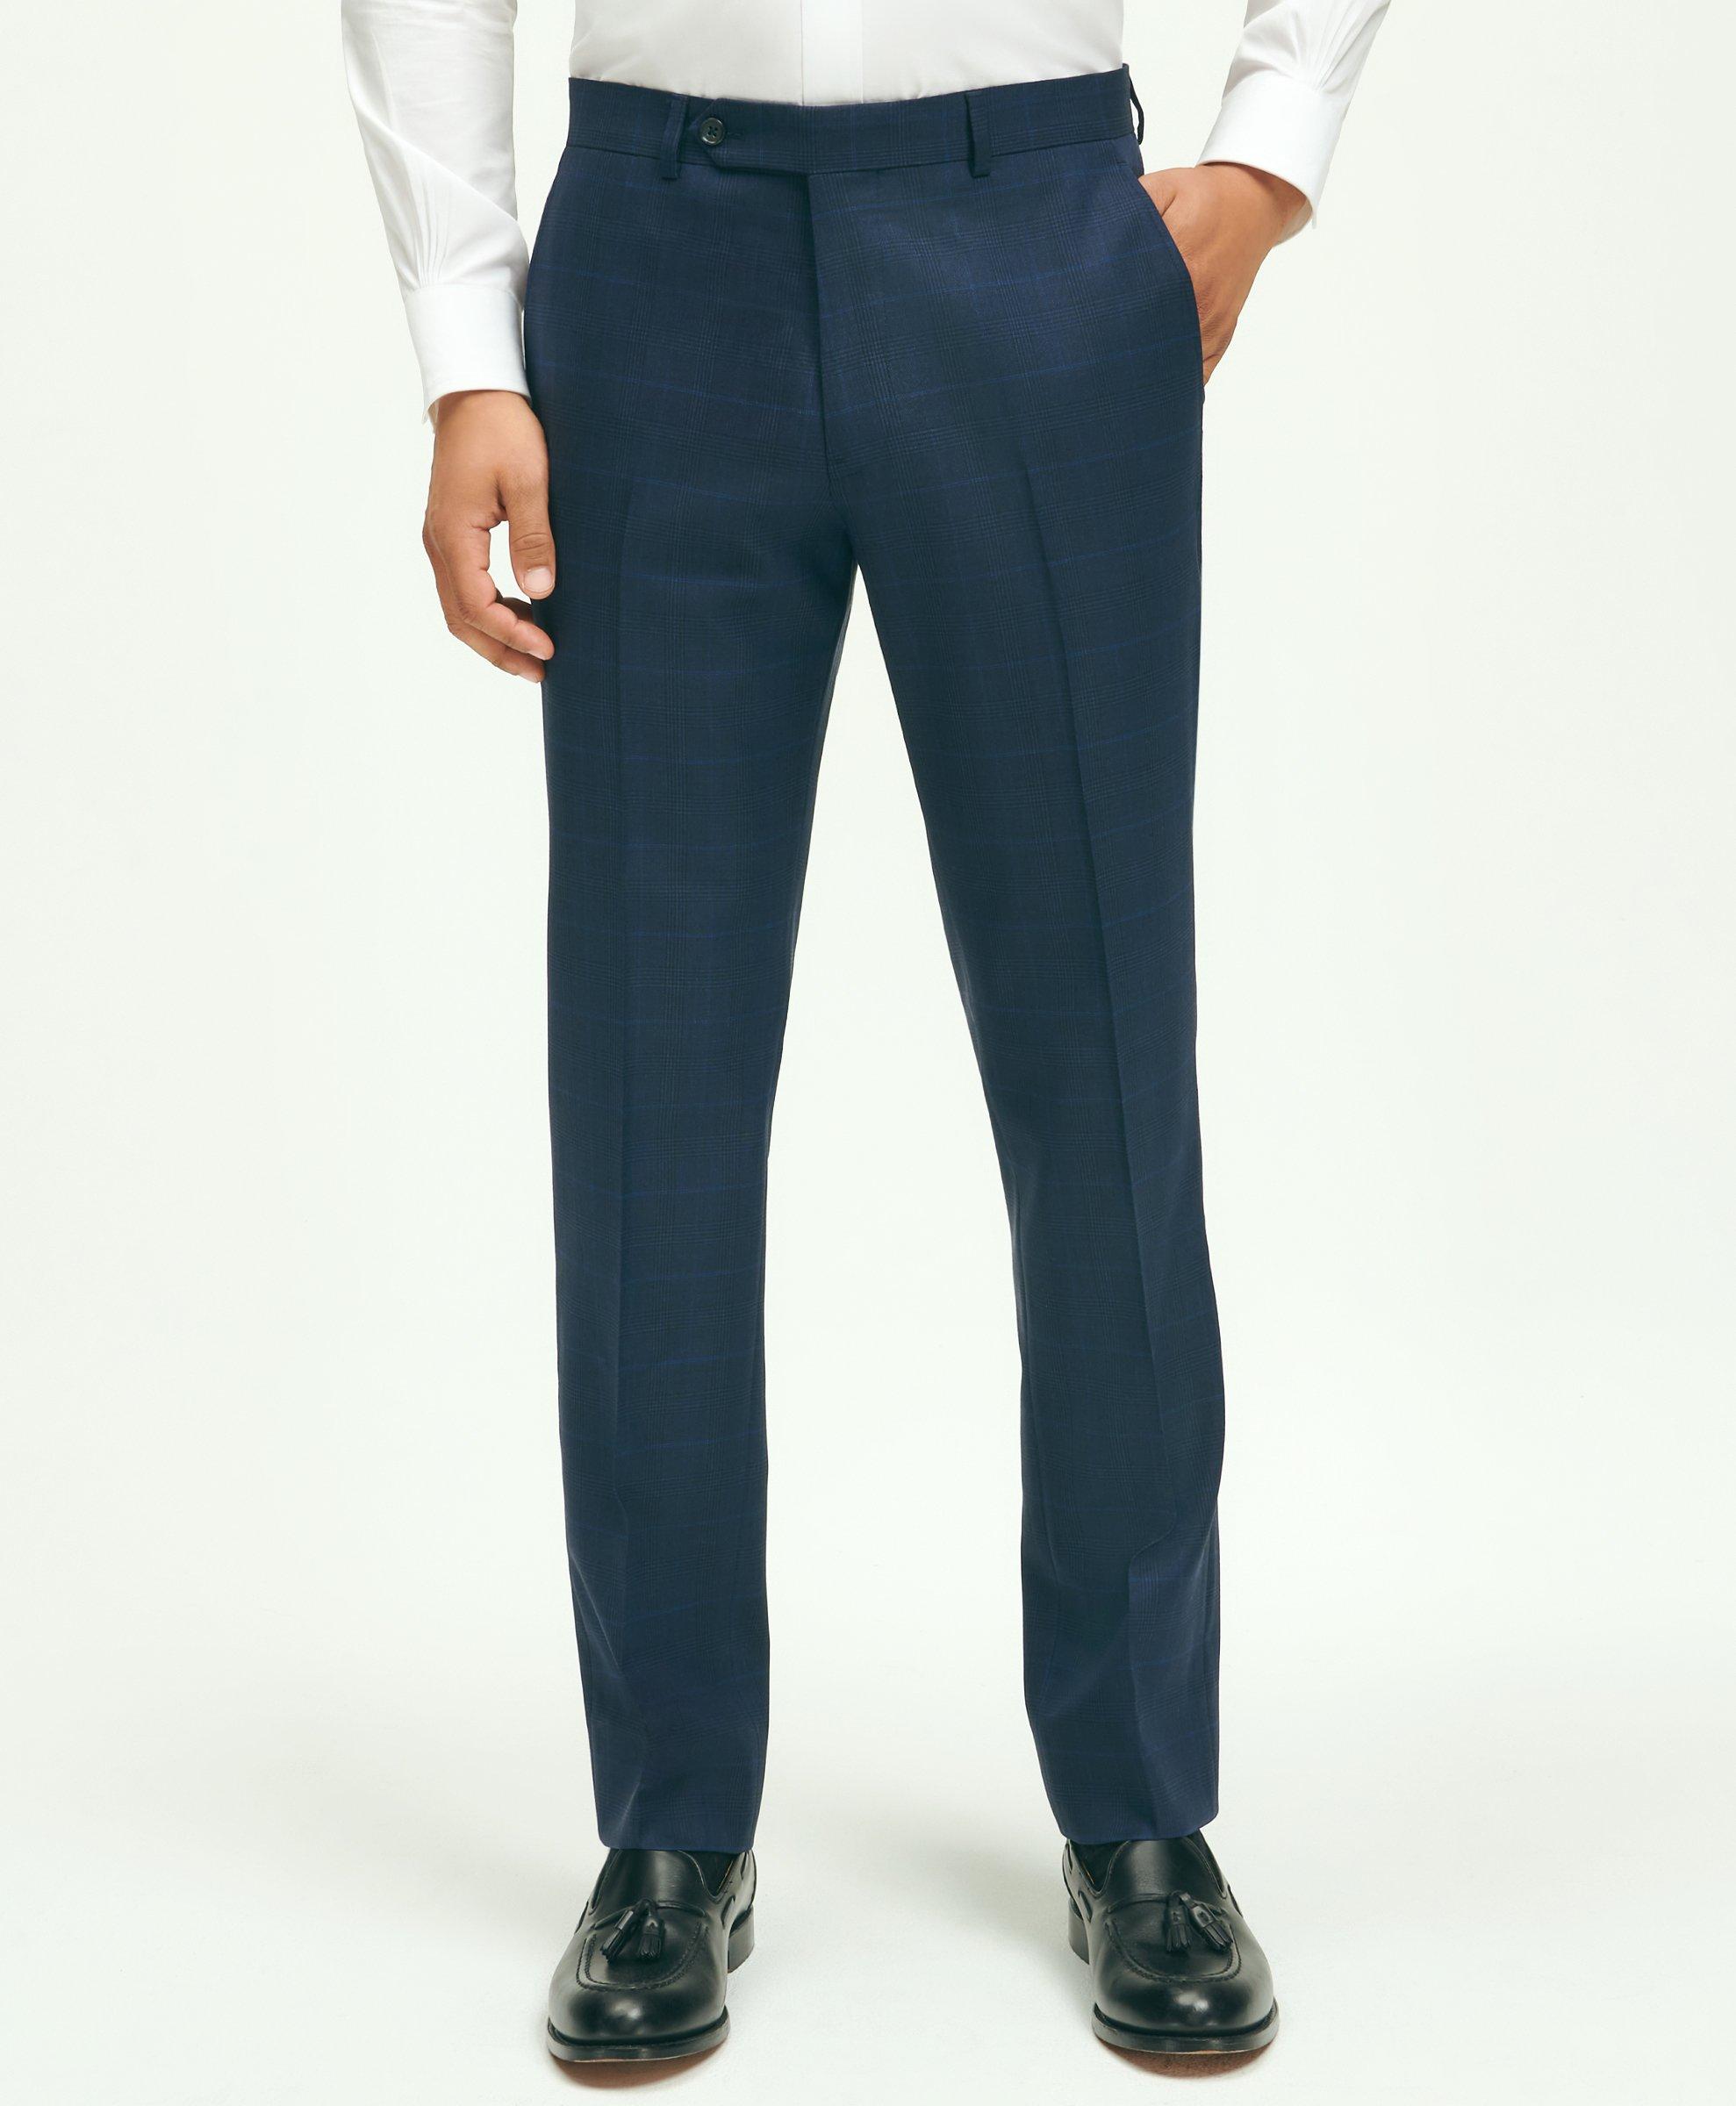 Suit Pants for Men